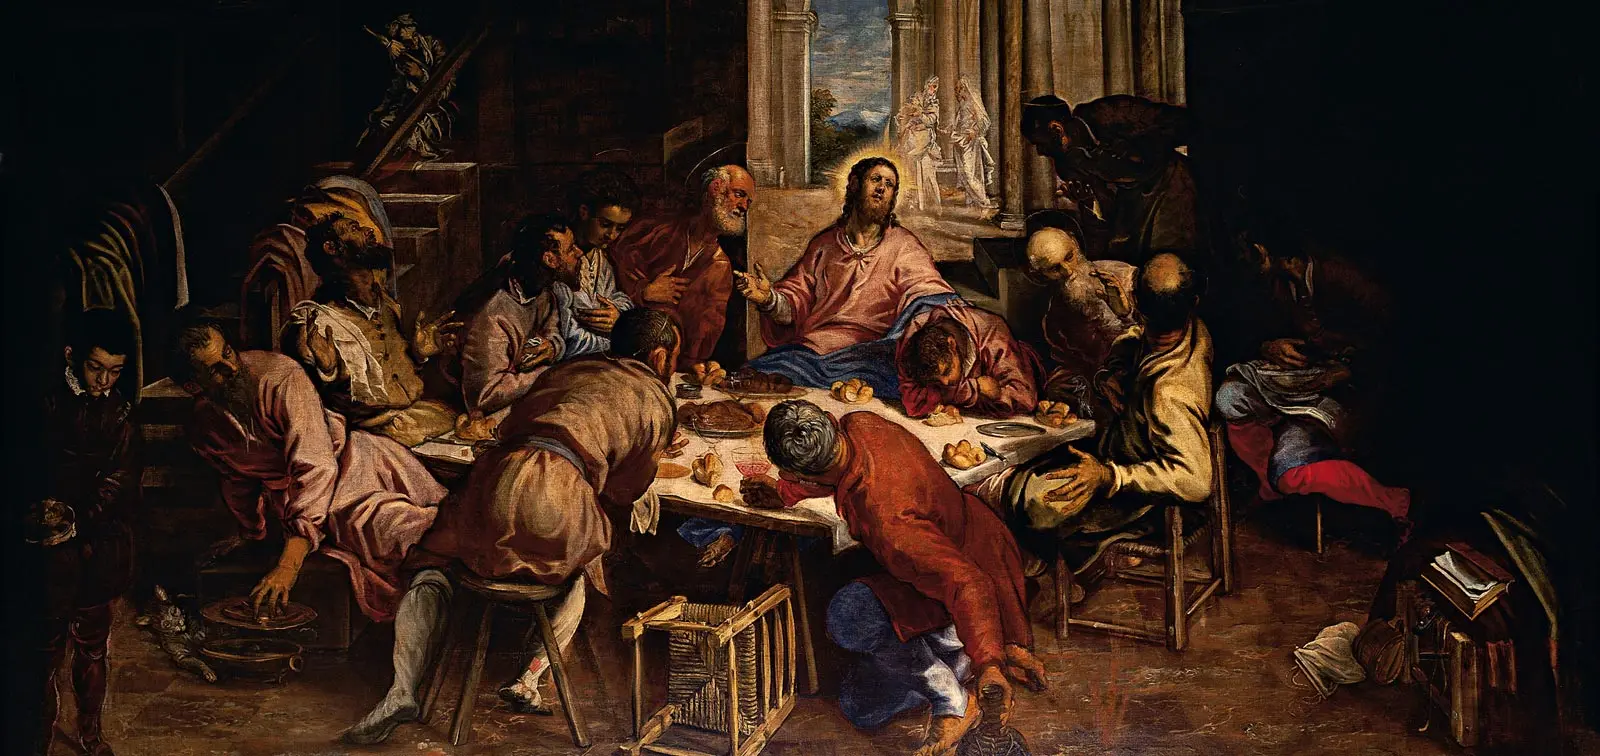 obras de tintoretto en el prado - Quién fue el maestro del pintor conocido como El Tintoretto